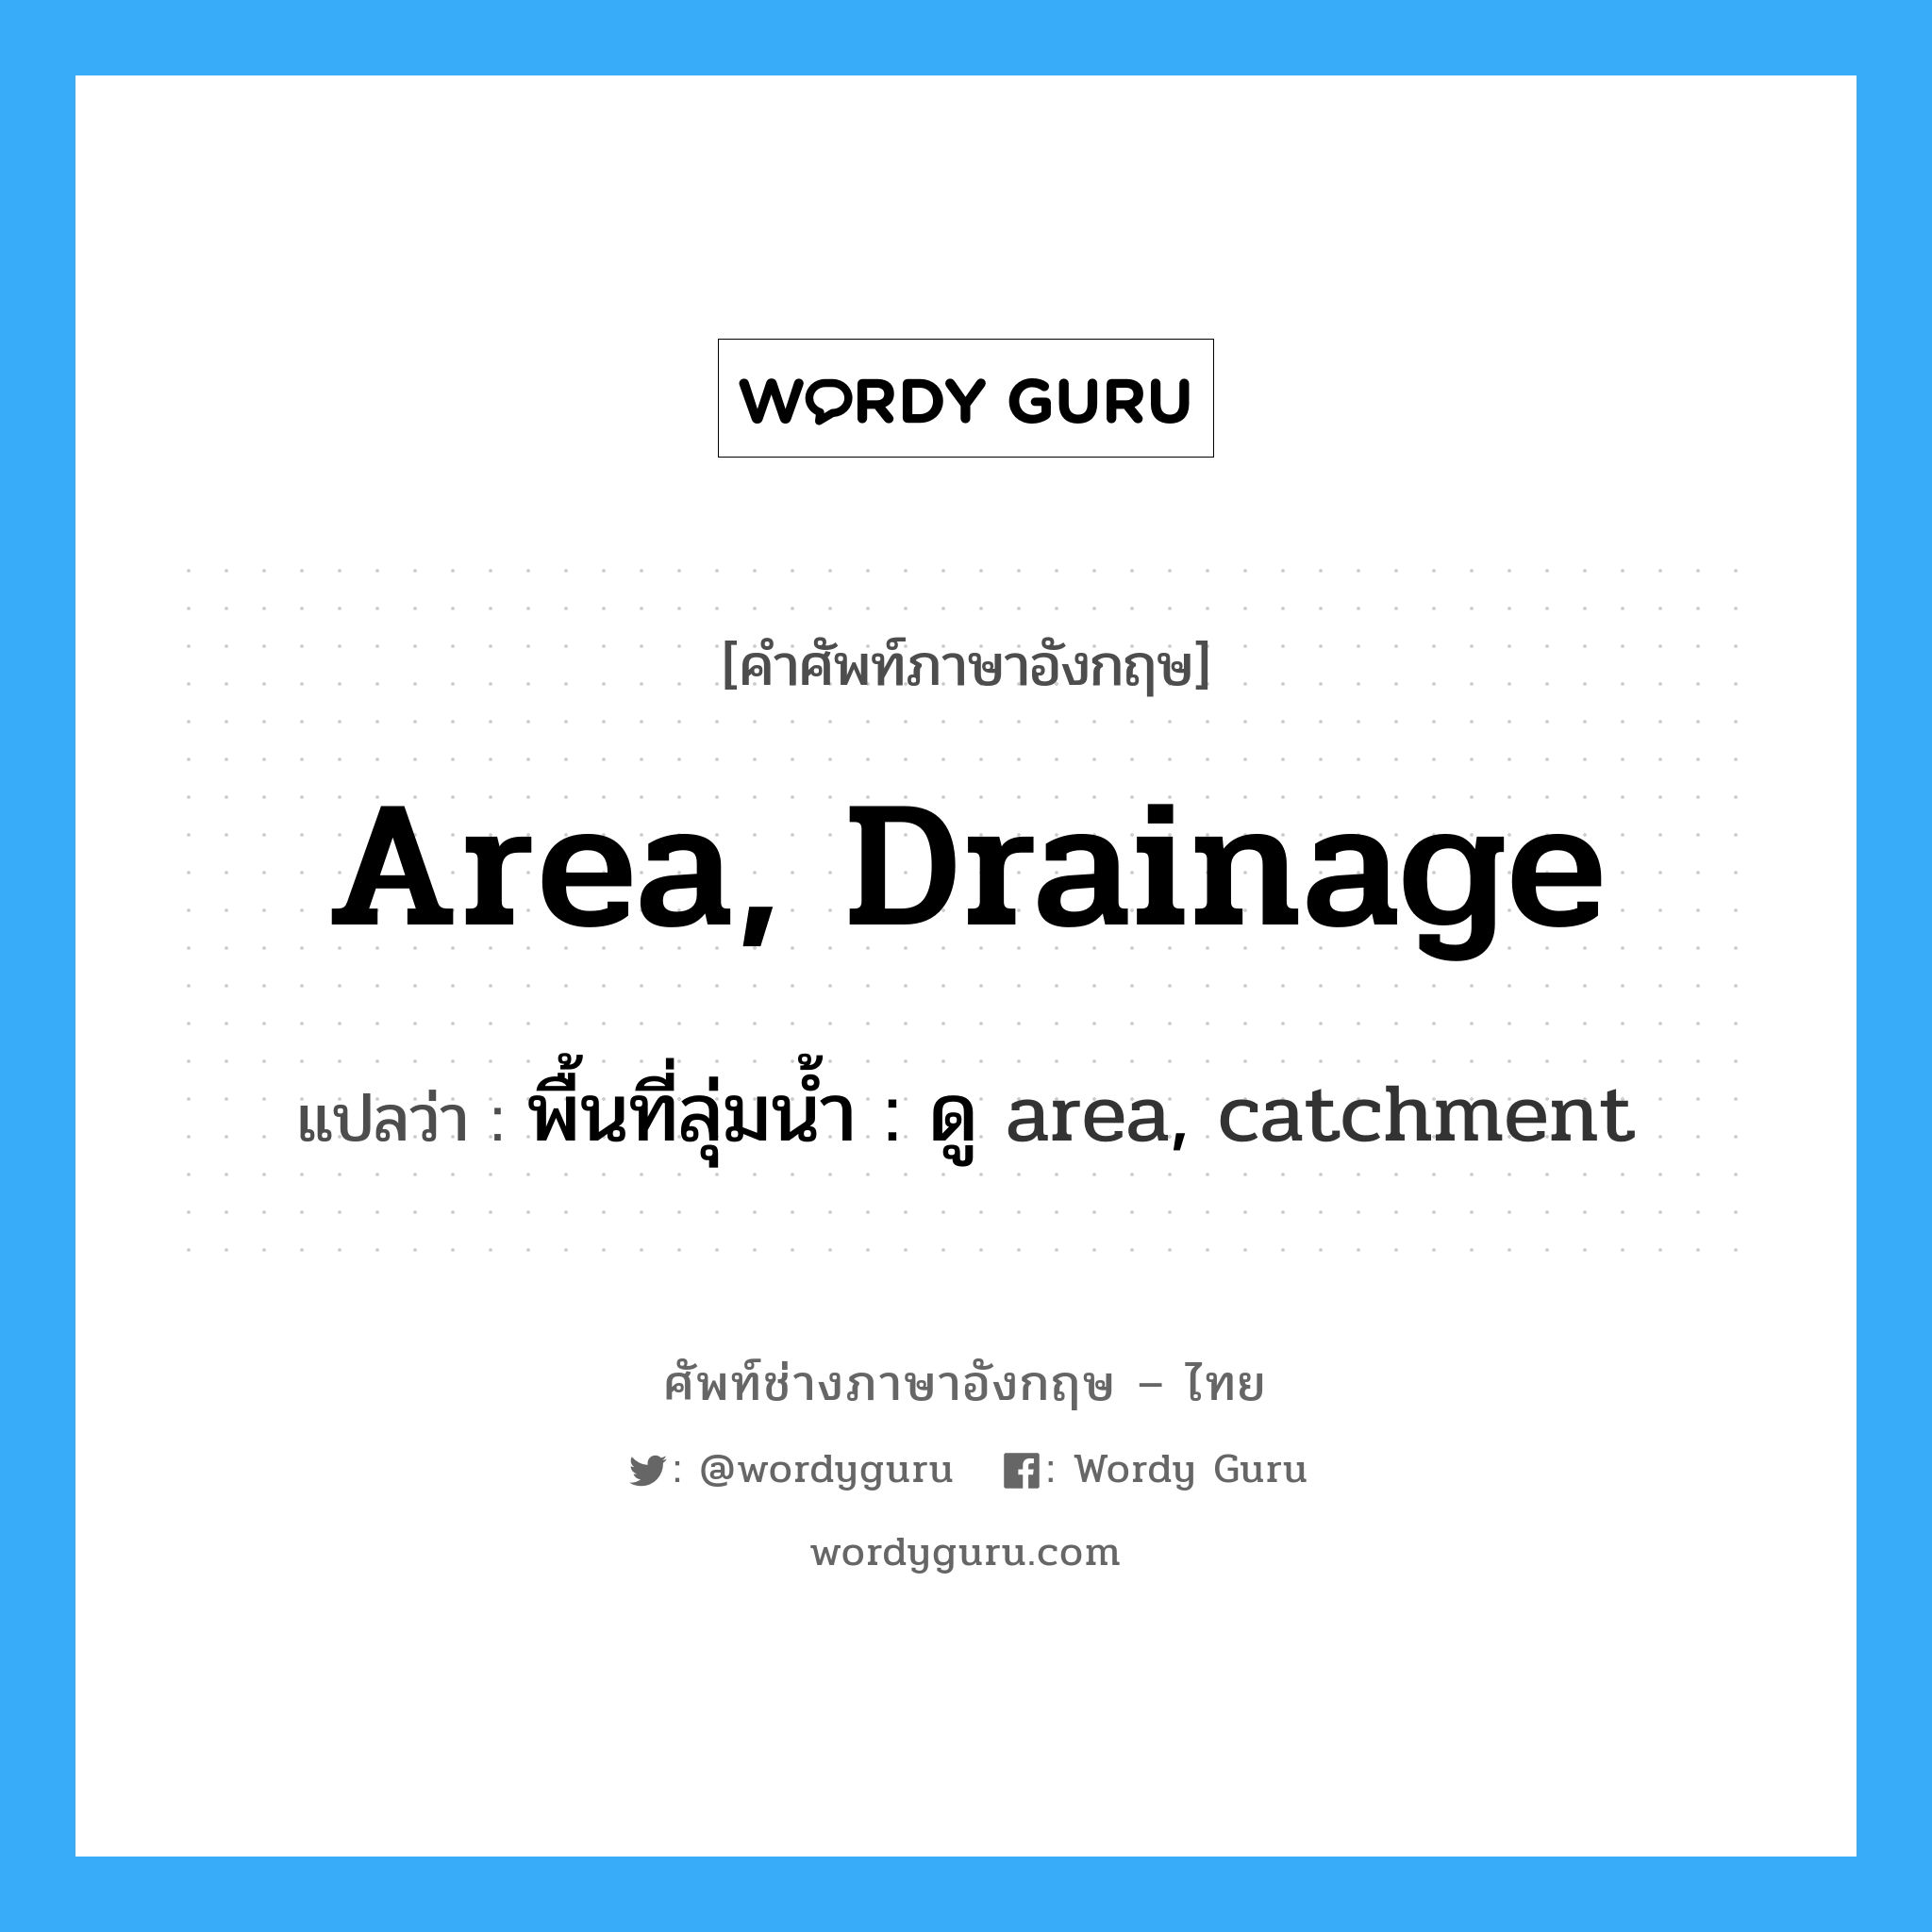 area, drainage แปลว่า?, คำศัพท์ช่างภาษาอังกฤษ - ไทย area, drainage คำศัพท์ภาษาอังกฤษ area, drainage แปลว่า พื้นที่ลุ่มน้ำ : ดู area, catchment